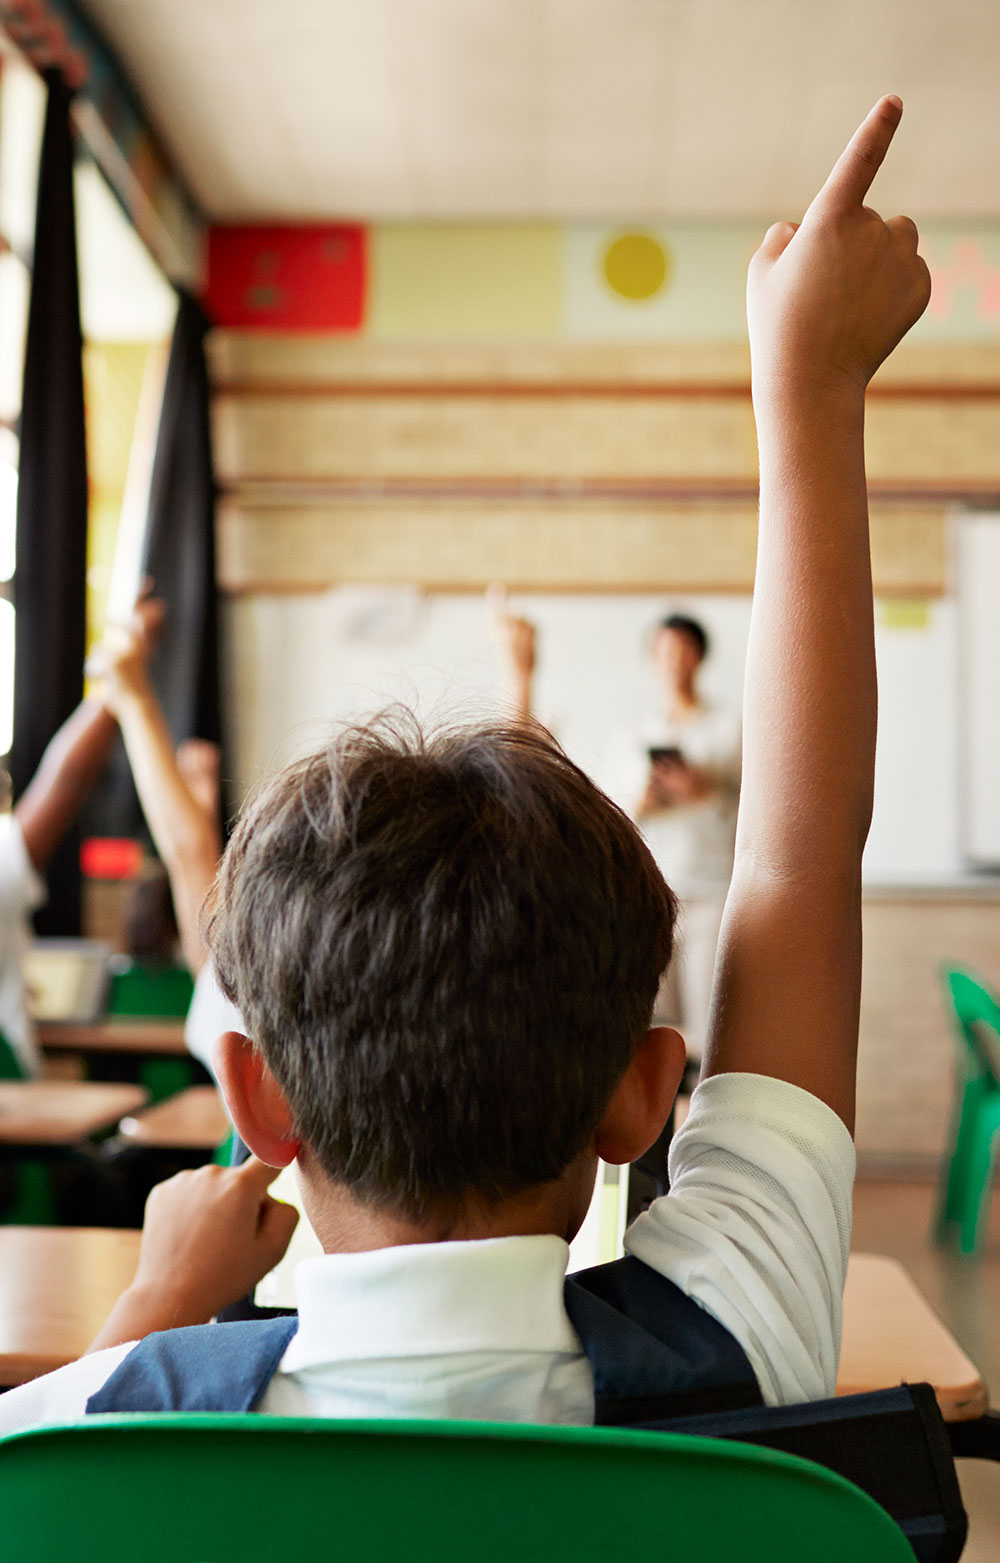 a boy raising his hand in class